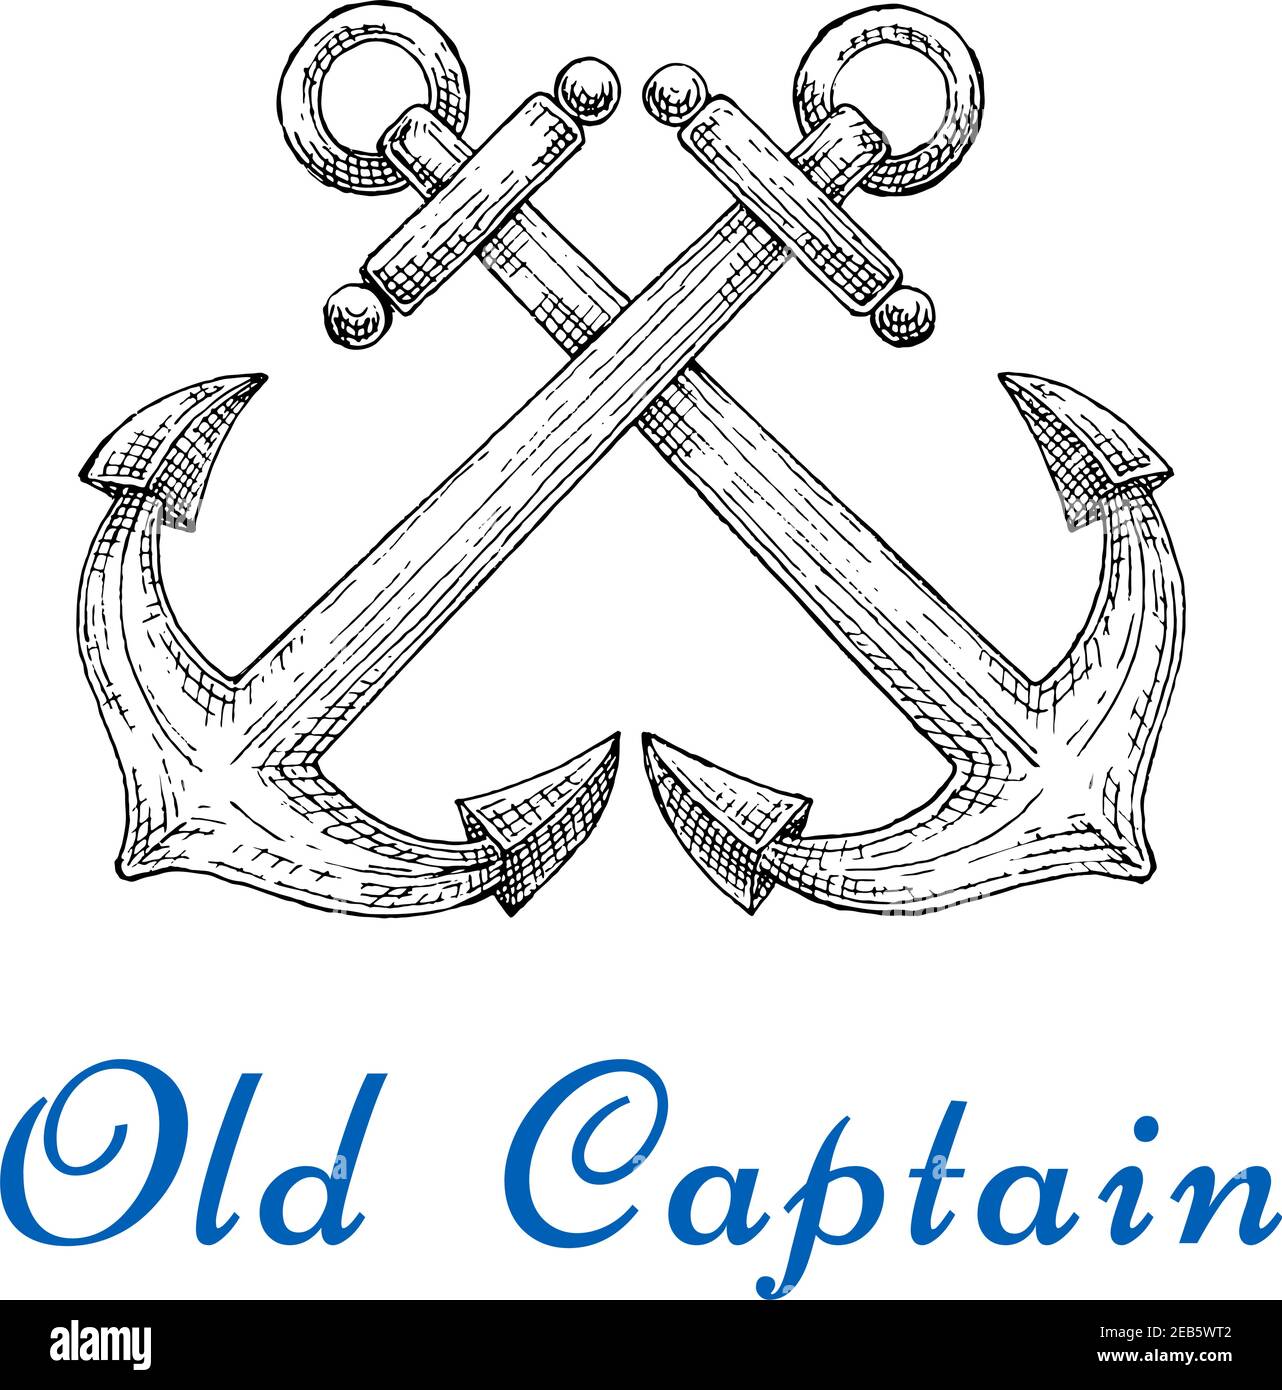 Emblème de capitaine ancien avec ancres marines amirauté croisées. Croisière sur l'océan, voyage en mer ou impression de t-shirt Illustration de Vecteur